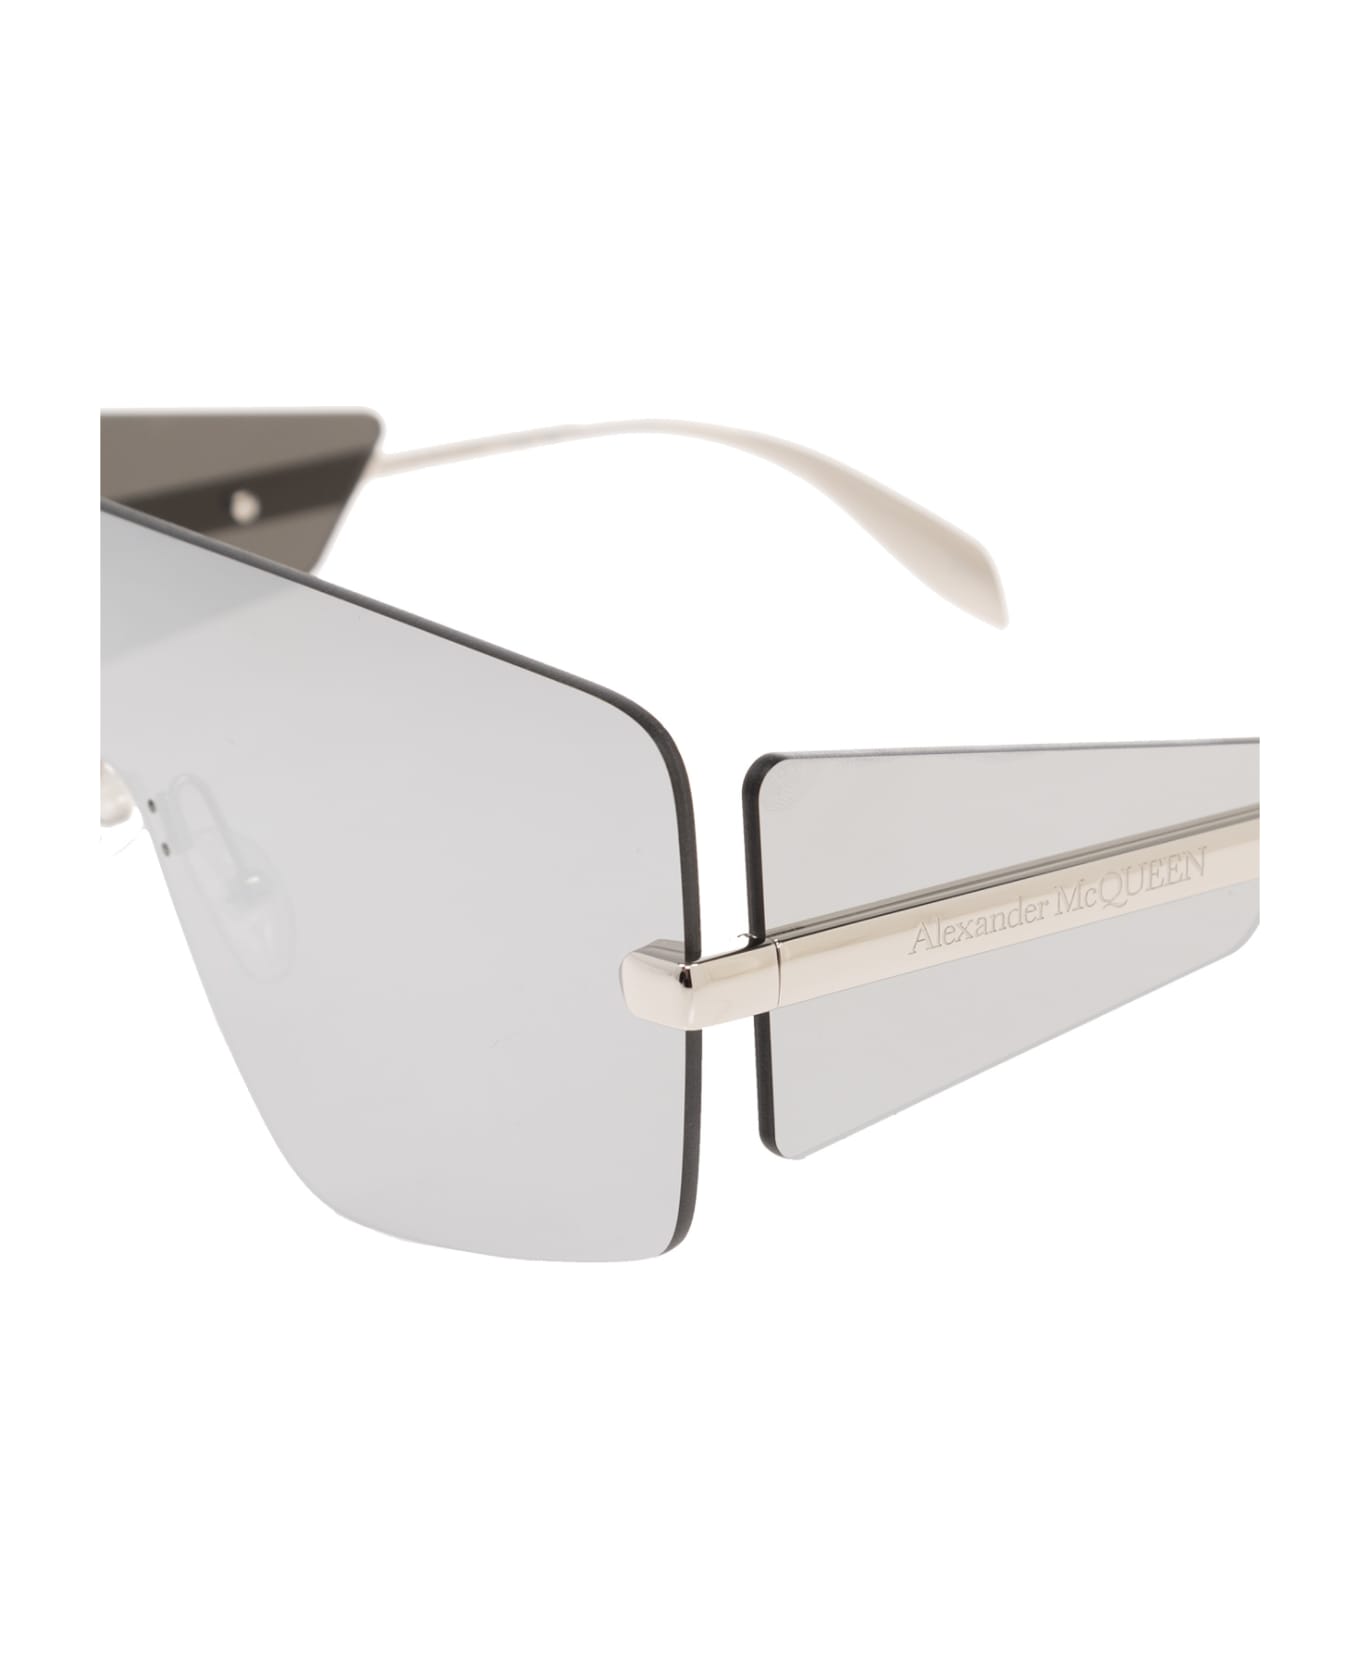 Alexander McQueen Silver Shield Sunglasses - Silver